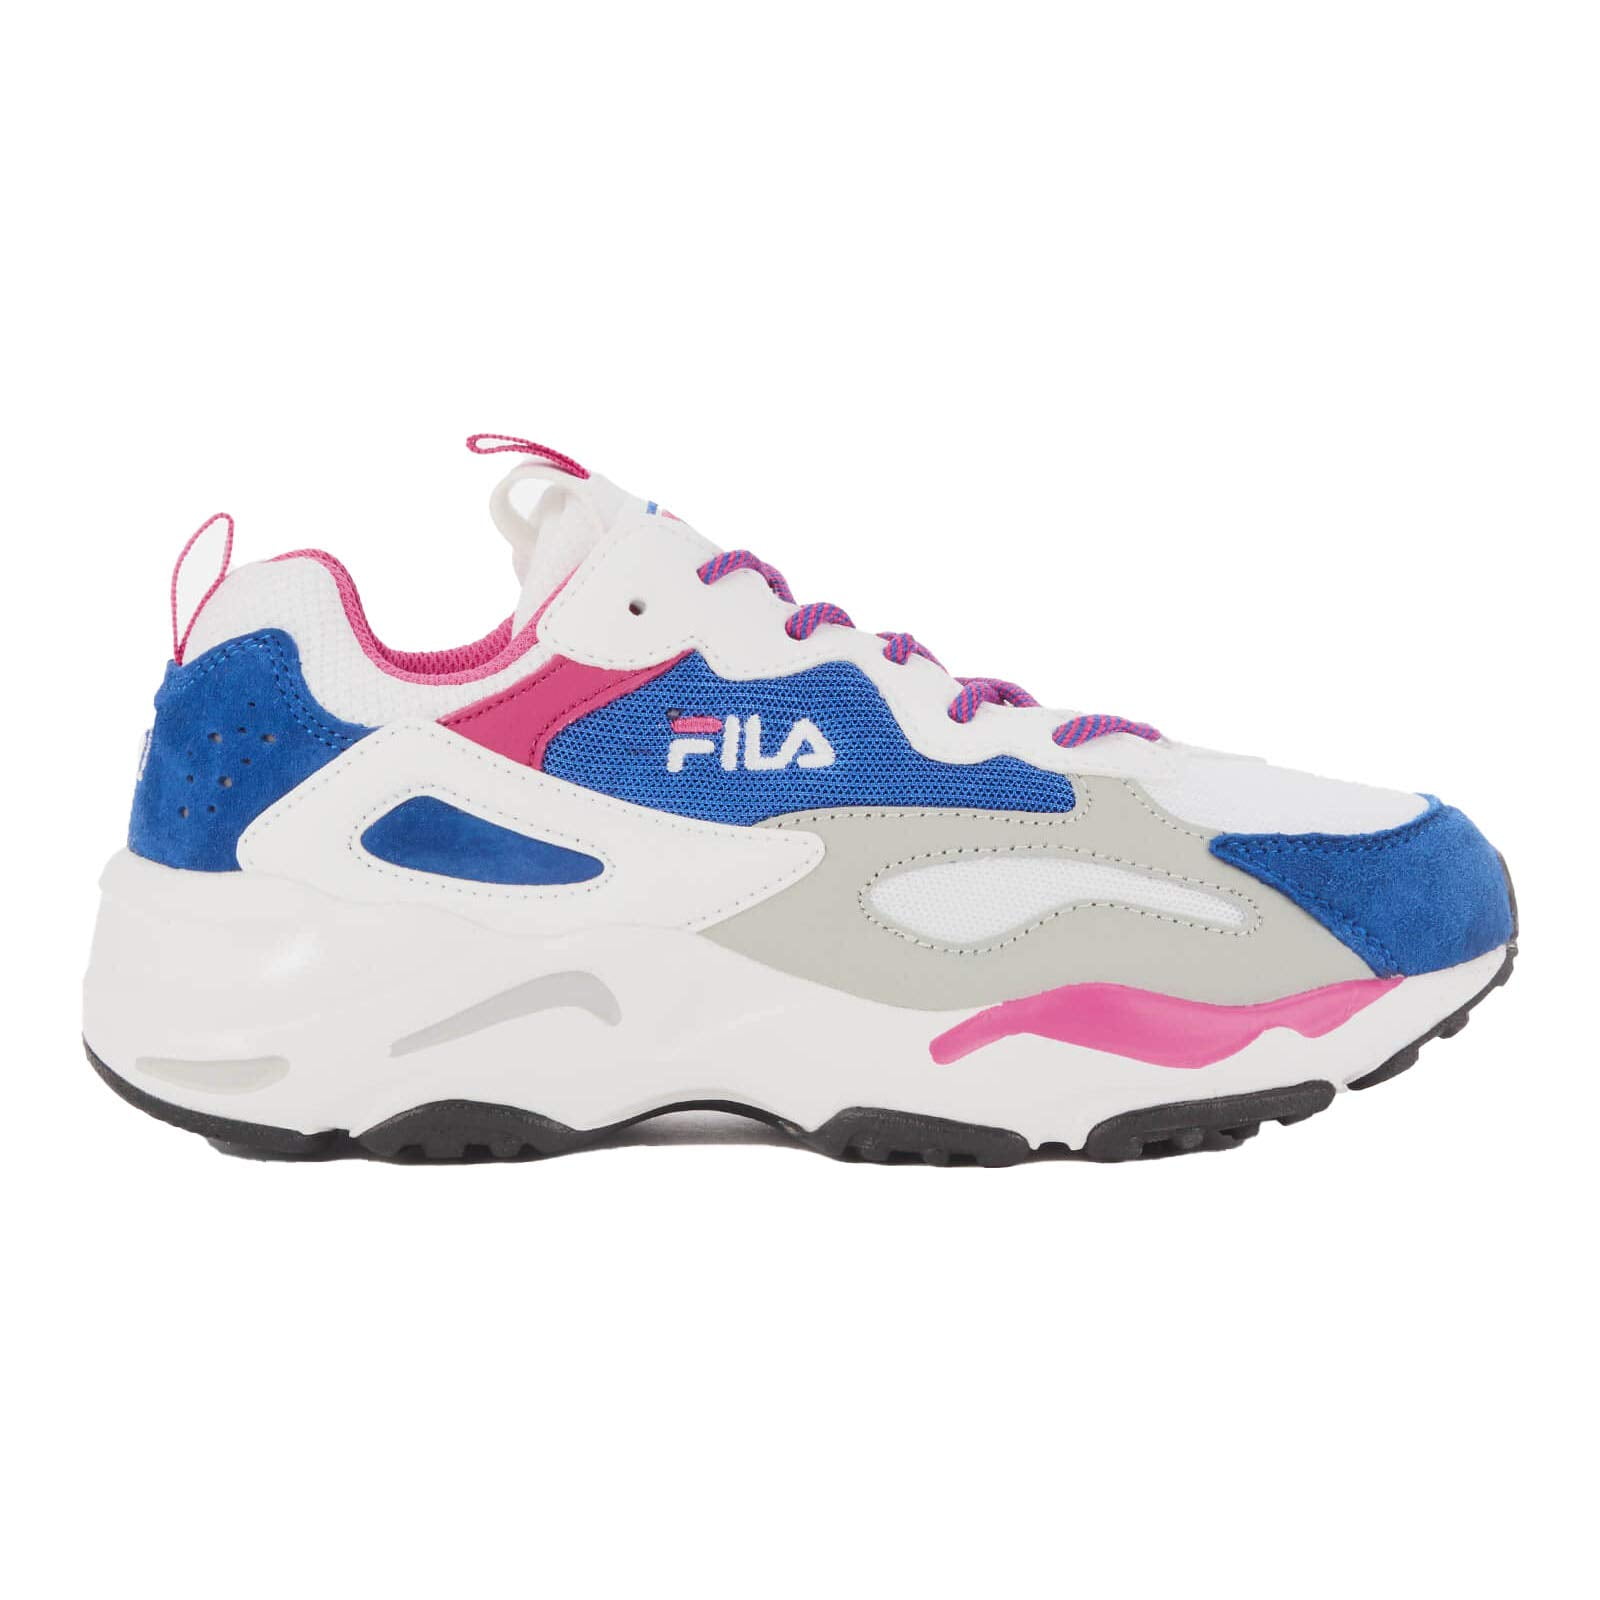 FILA - FILA RAY TRACER Sneakers 428 